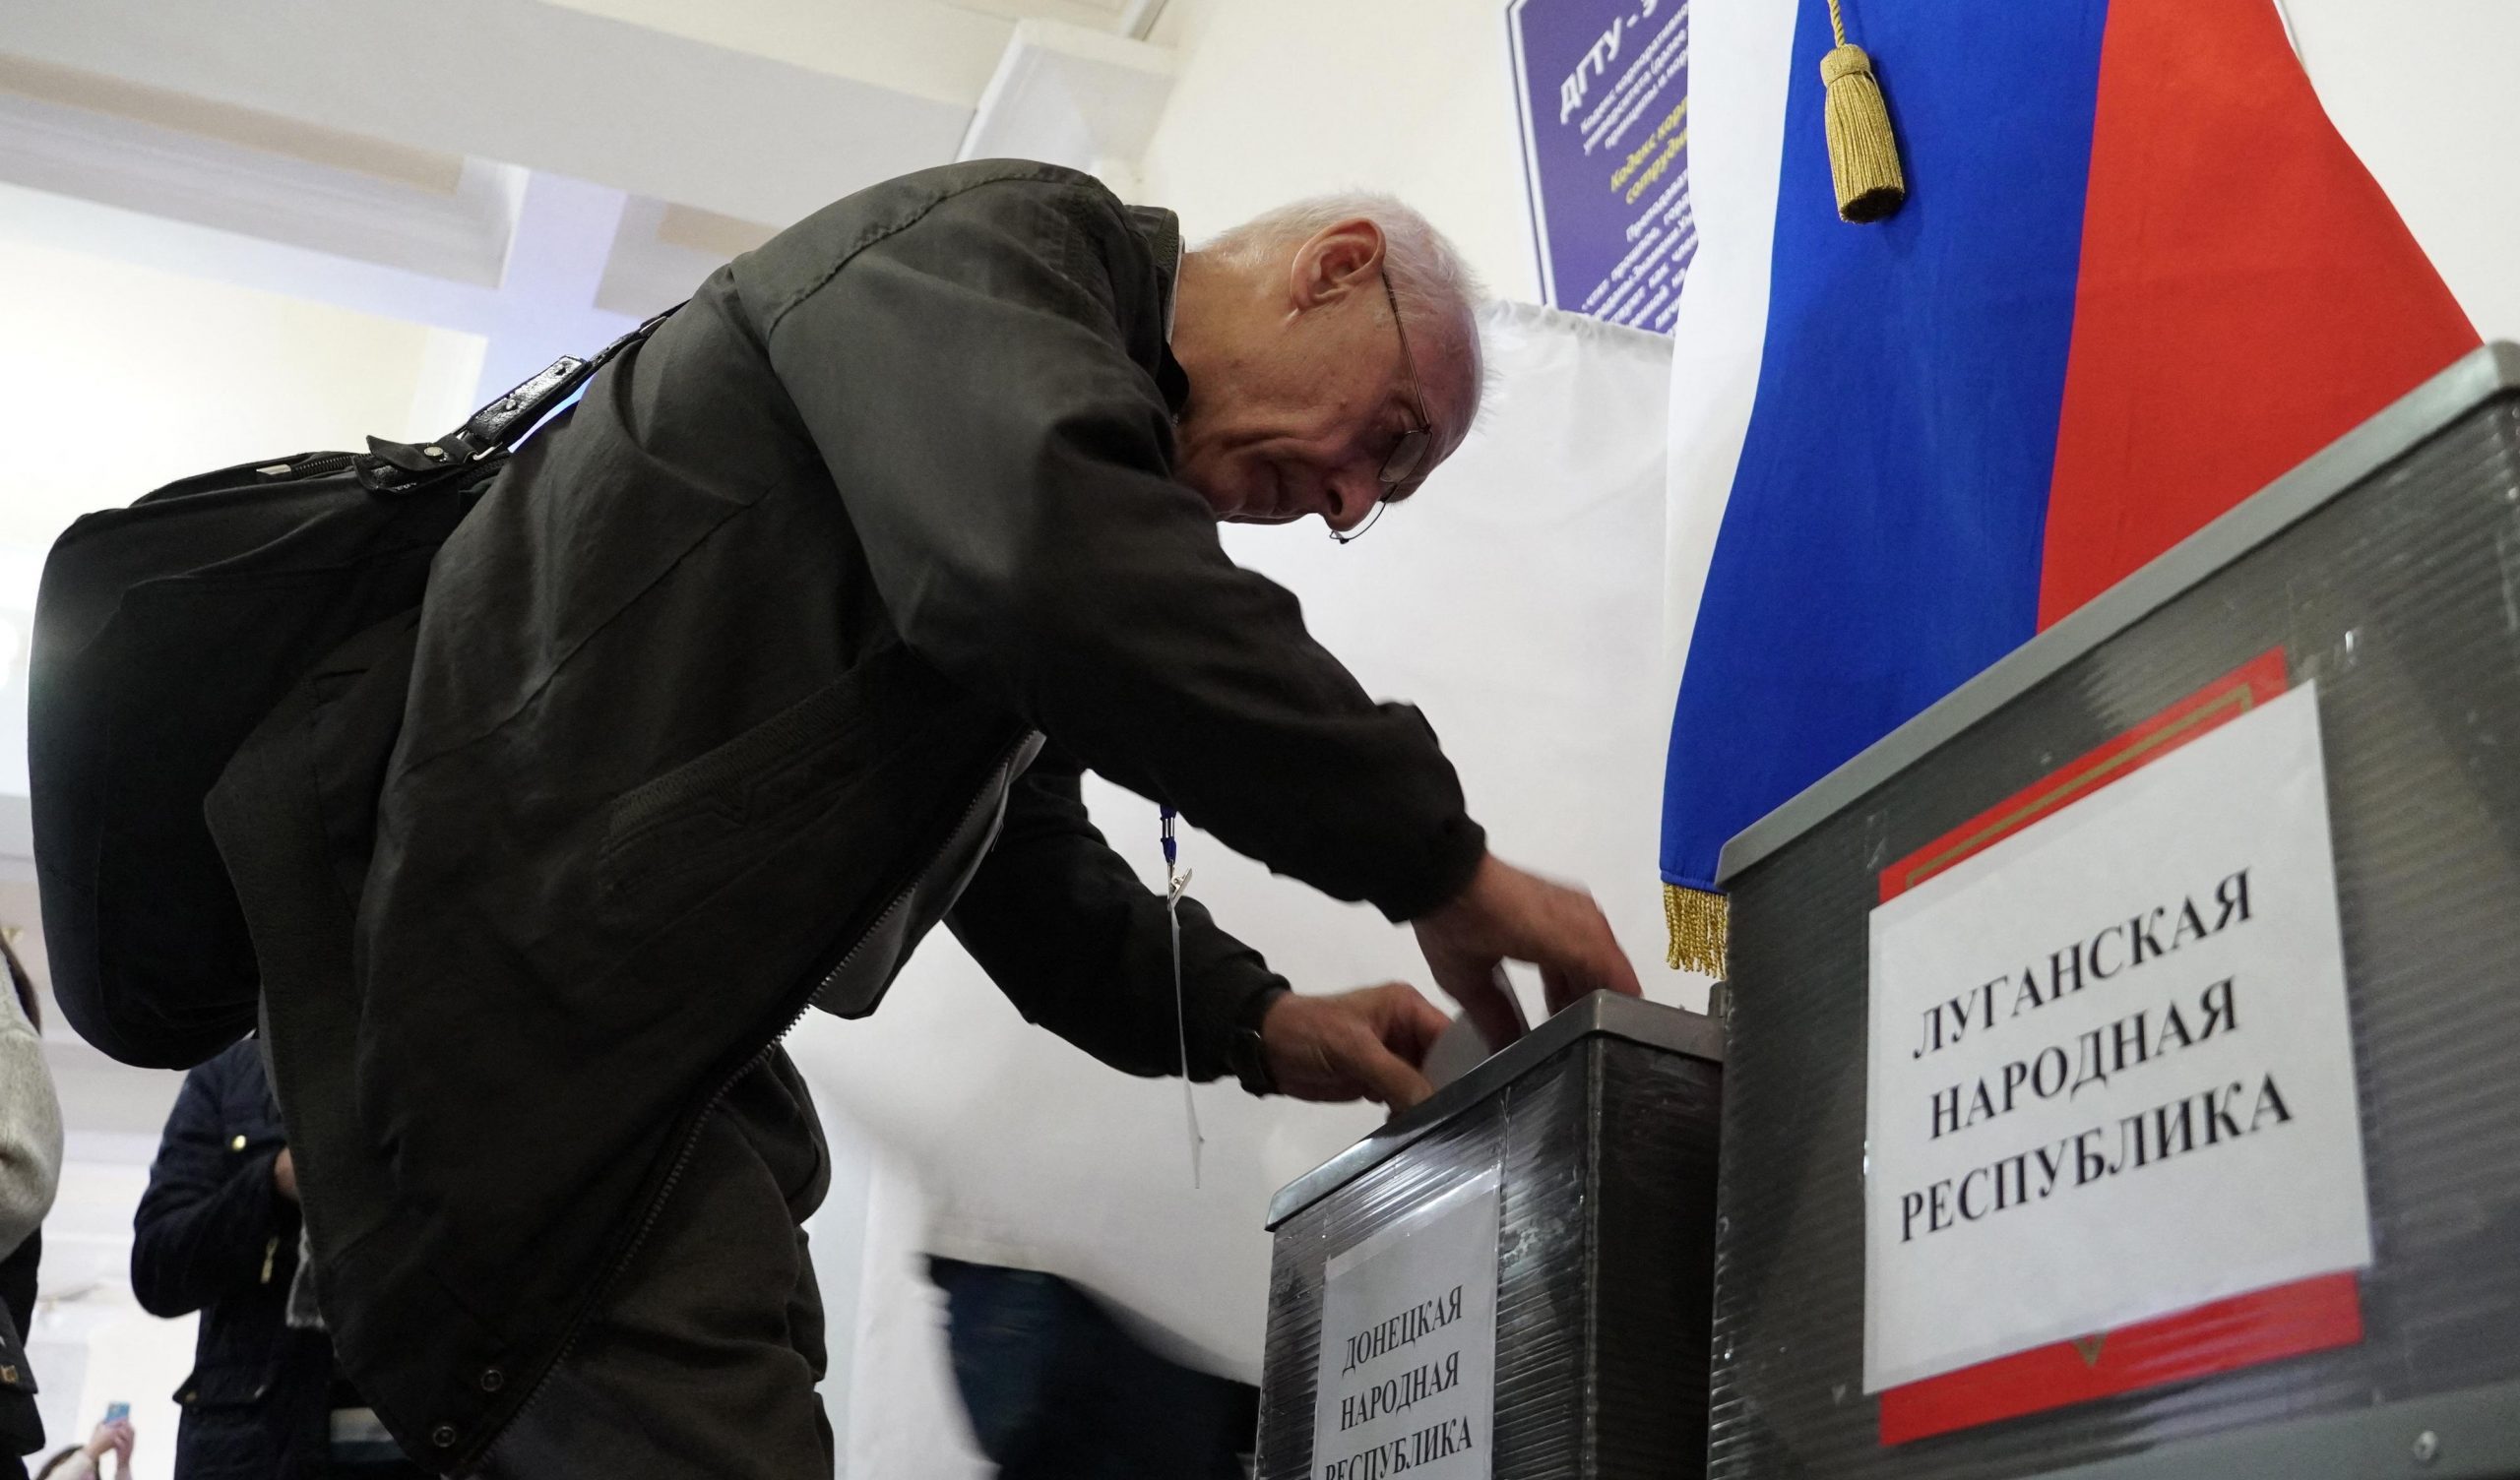 La Russia elogia i pupazzi prezzolati: "Osservatori internazionali riconoscono la correttezza del referendum"